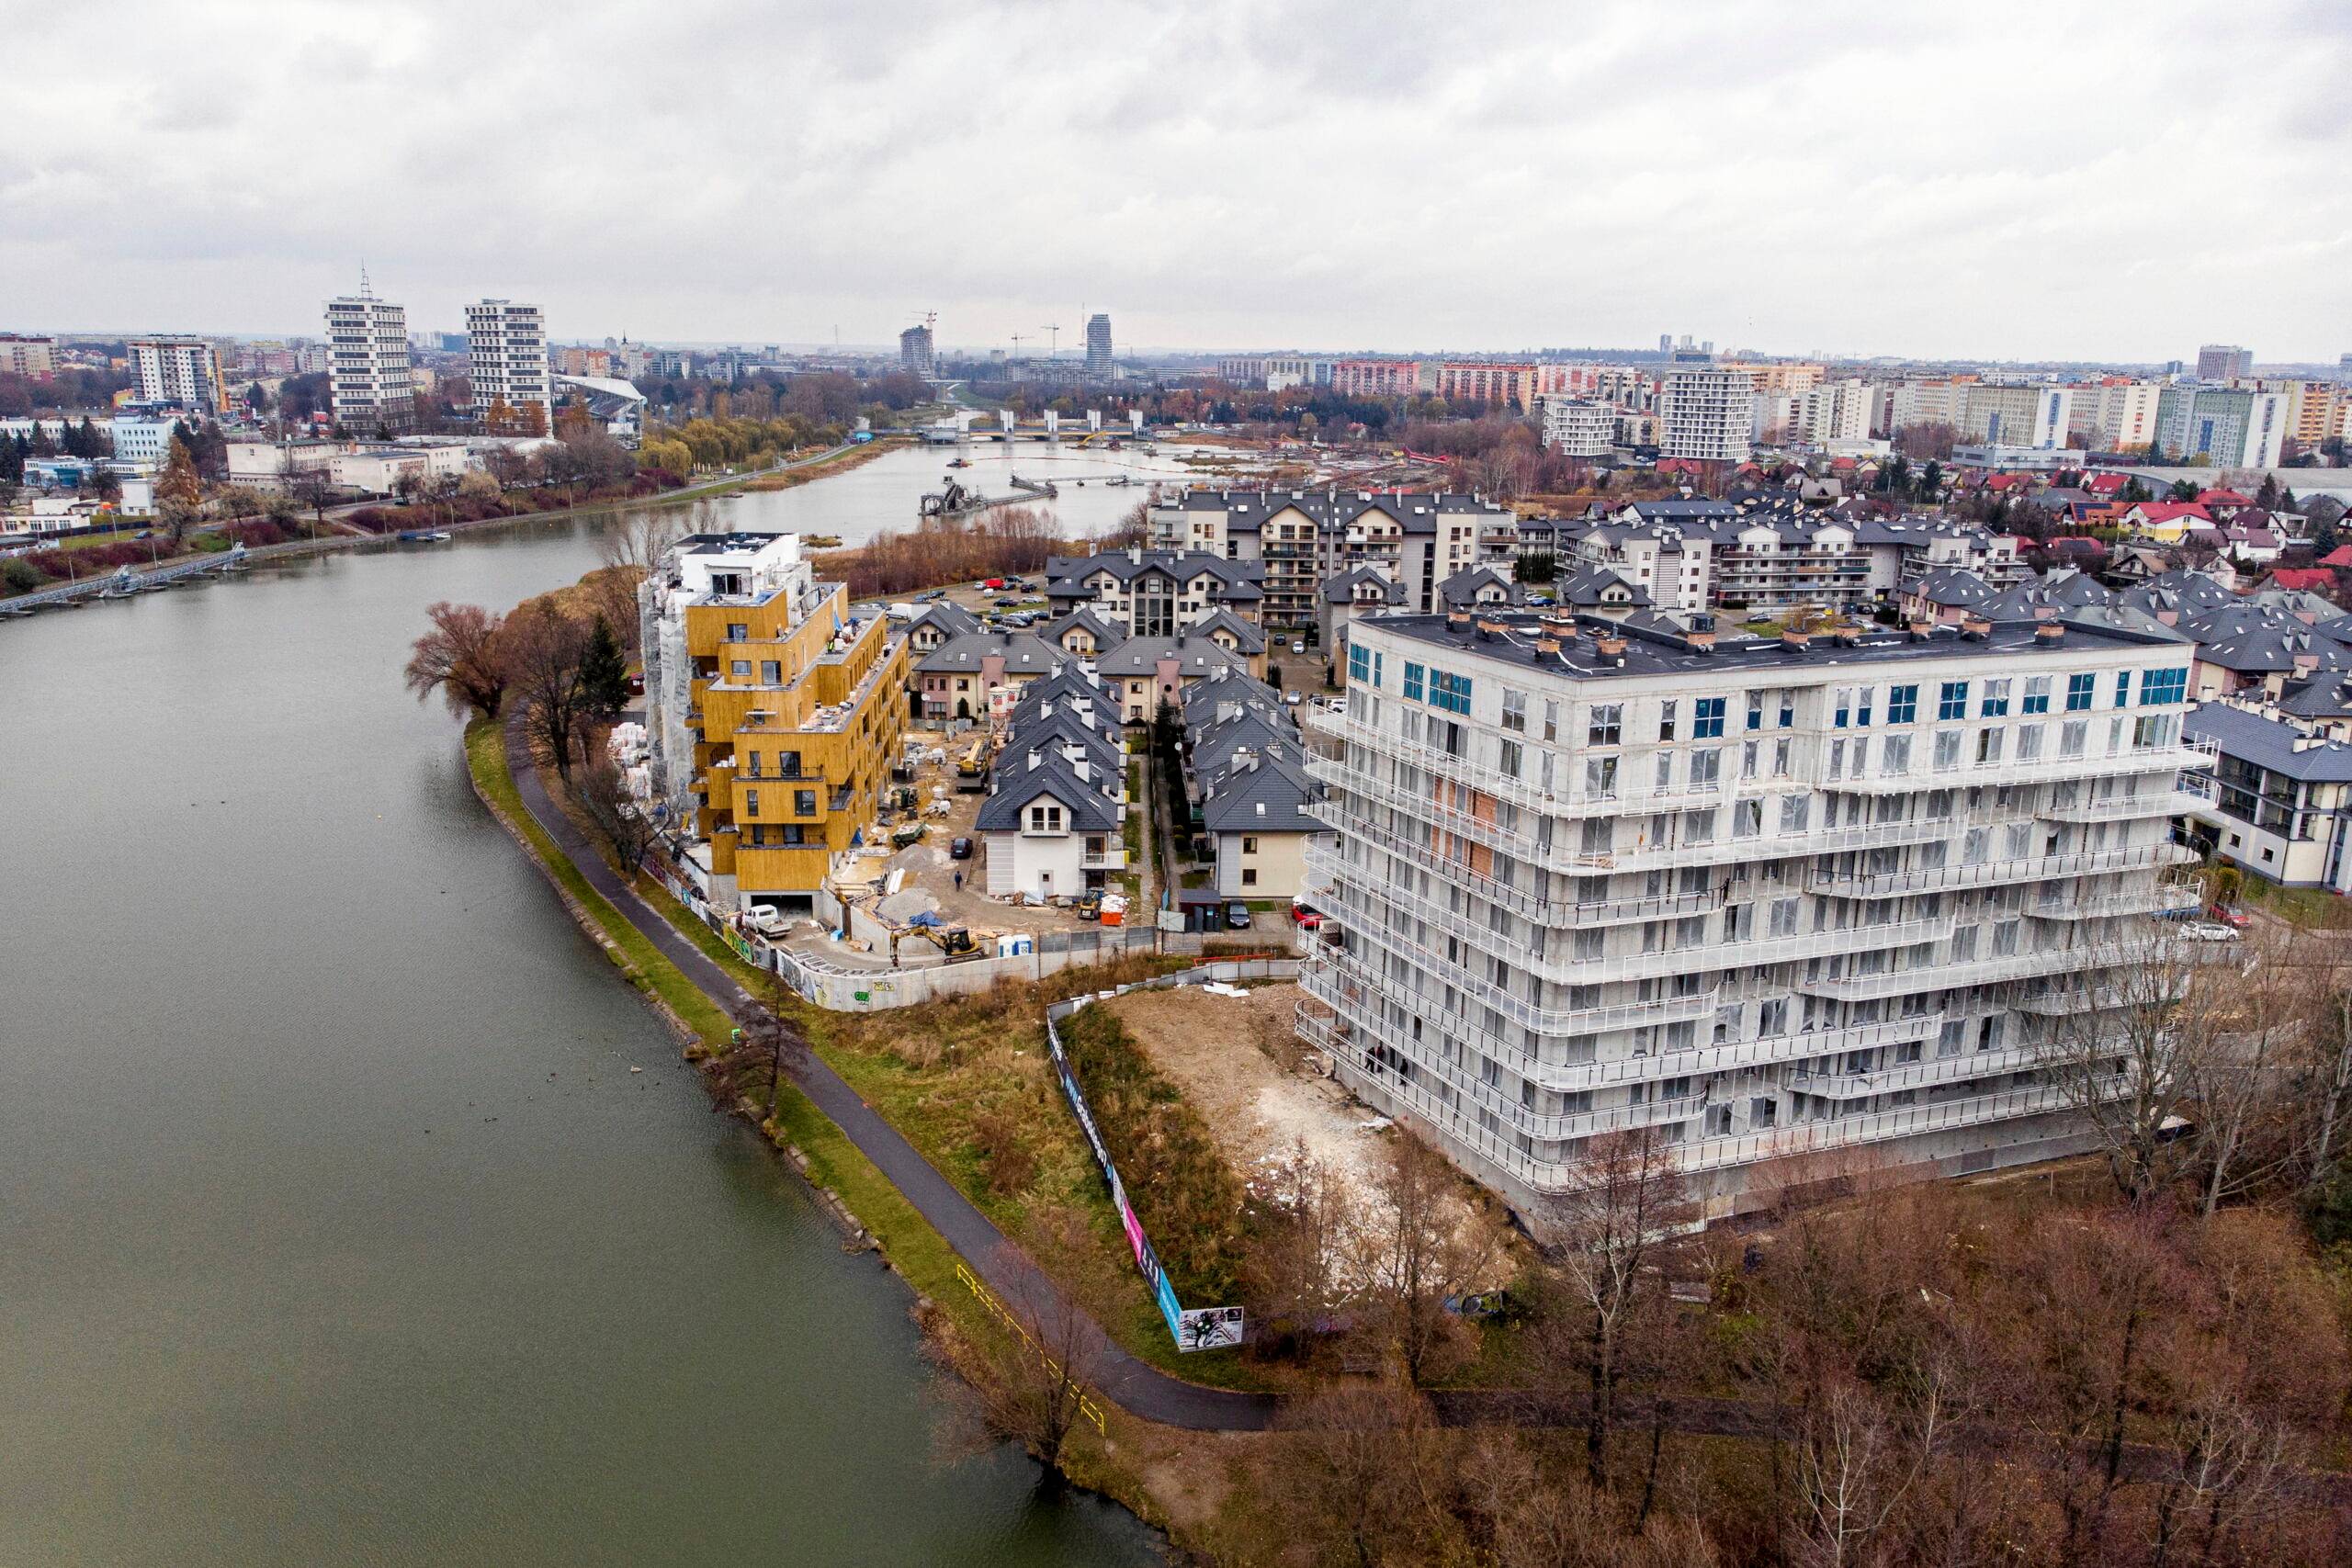 Widok na fragment Rzeszowa z nowymi budynkami nad zalewem na rzece Wisłok